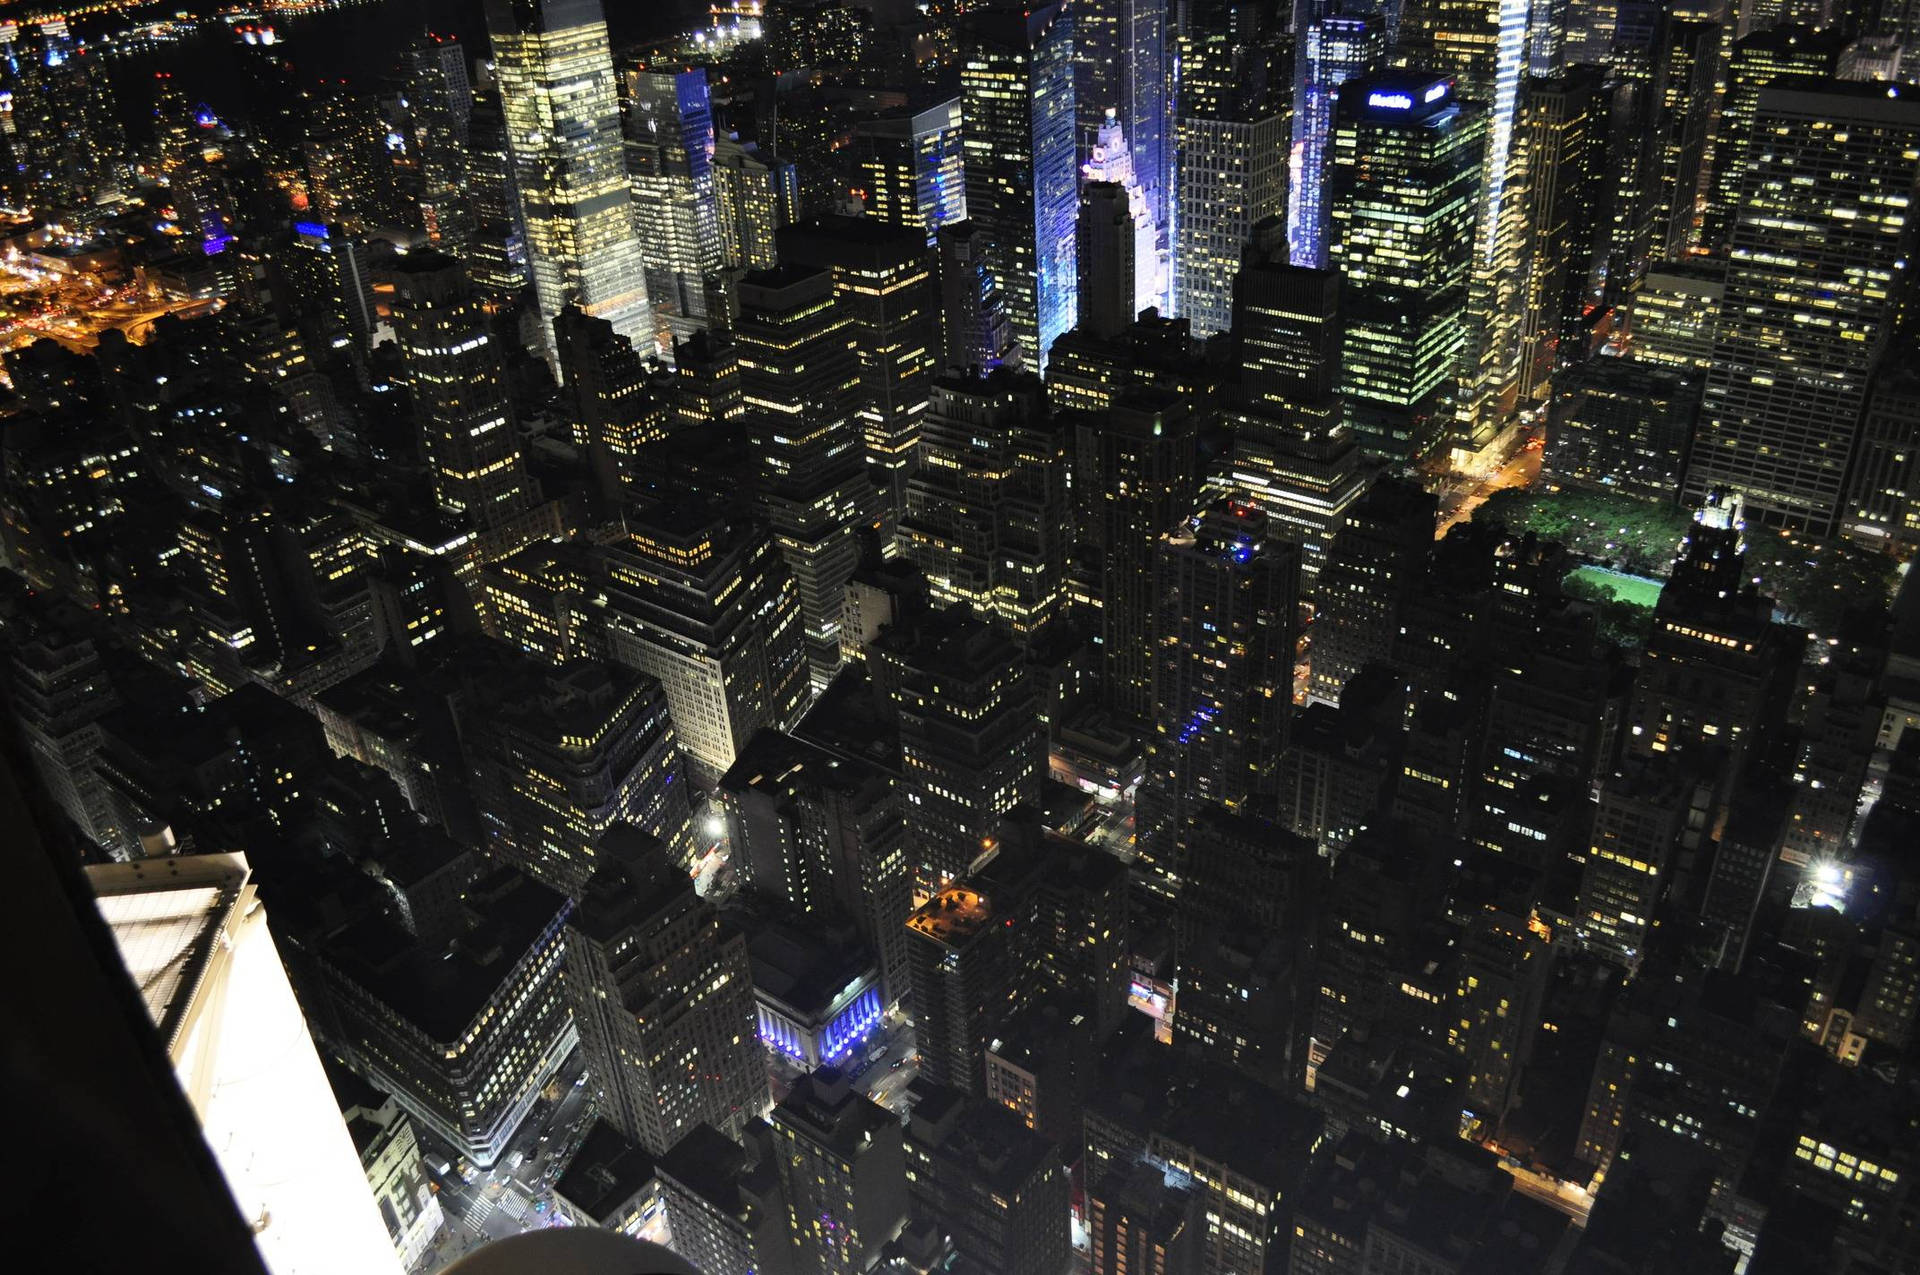 Illuminated Night Time Cityscape Background